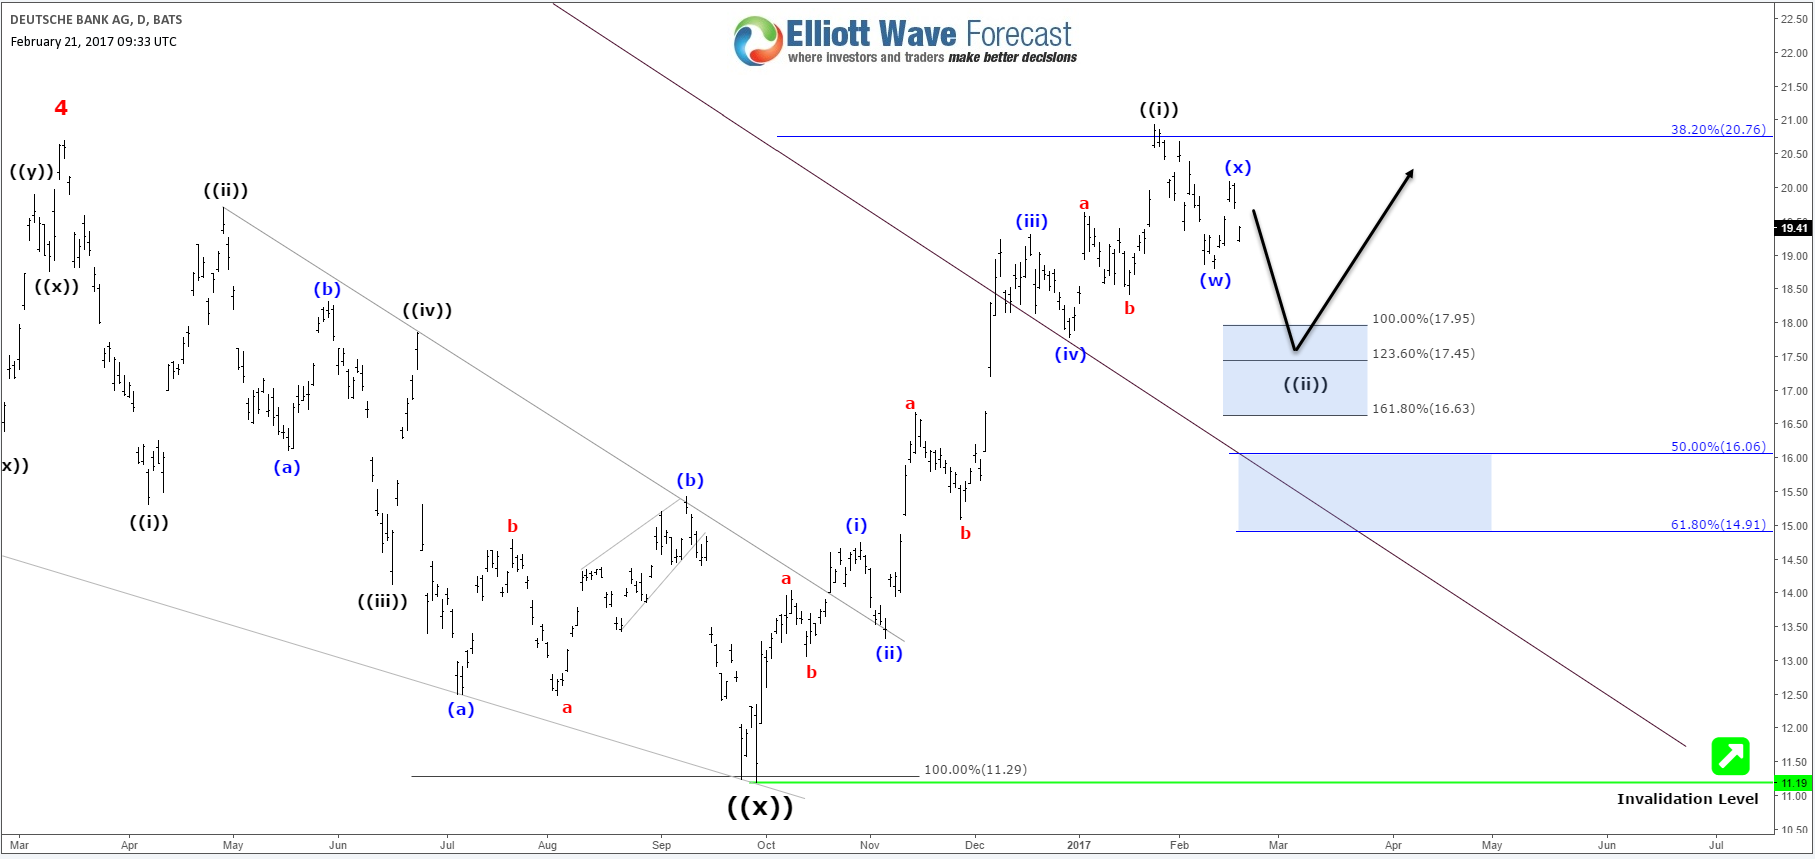 DeutscheBank Elliott Wave Analysis Still Calling Higher